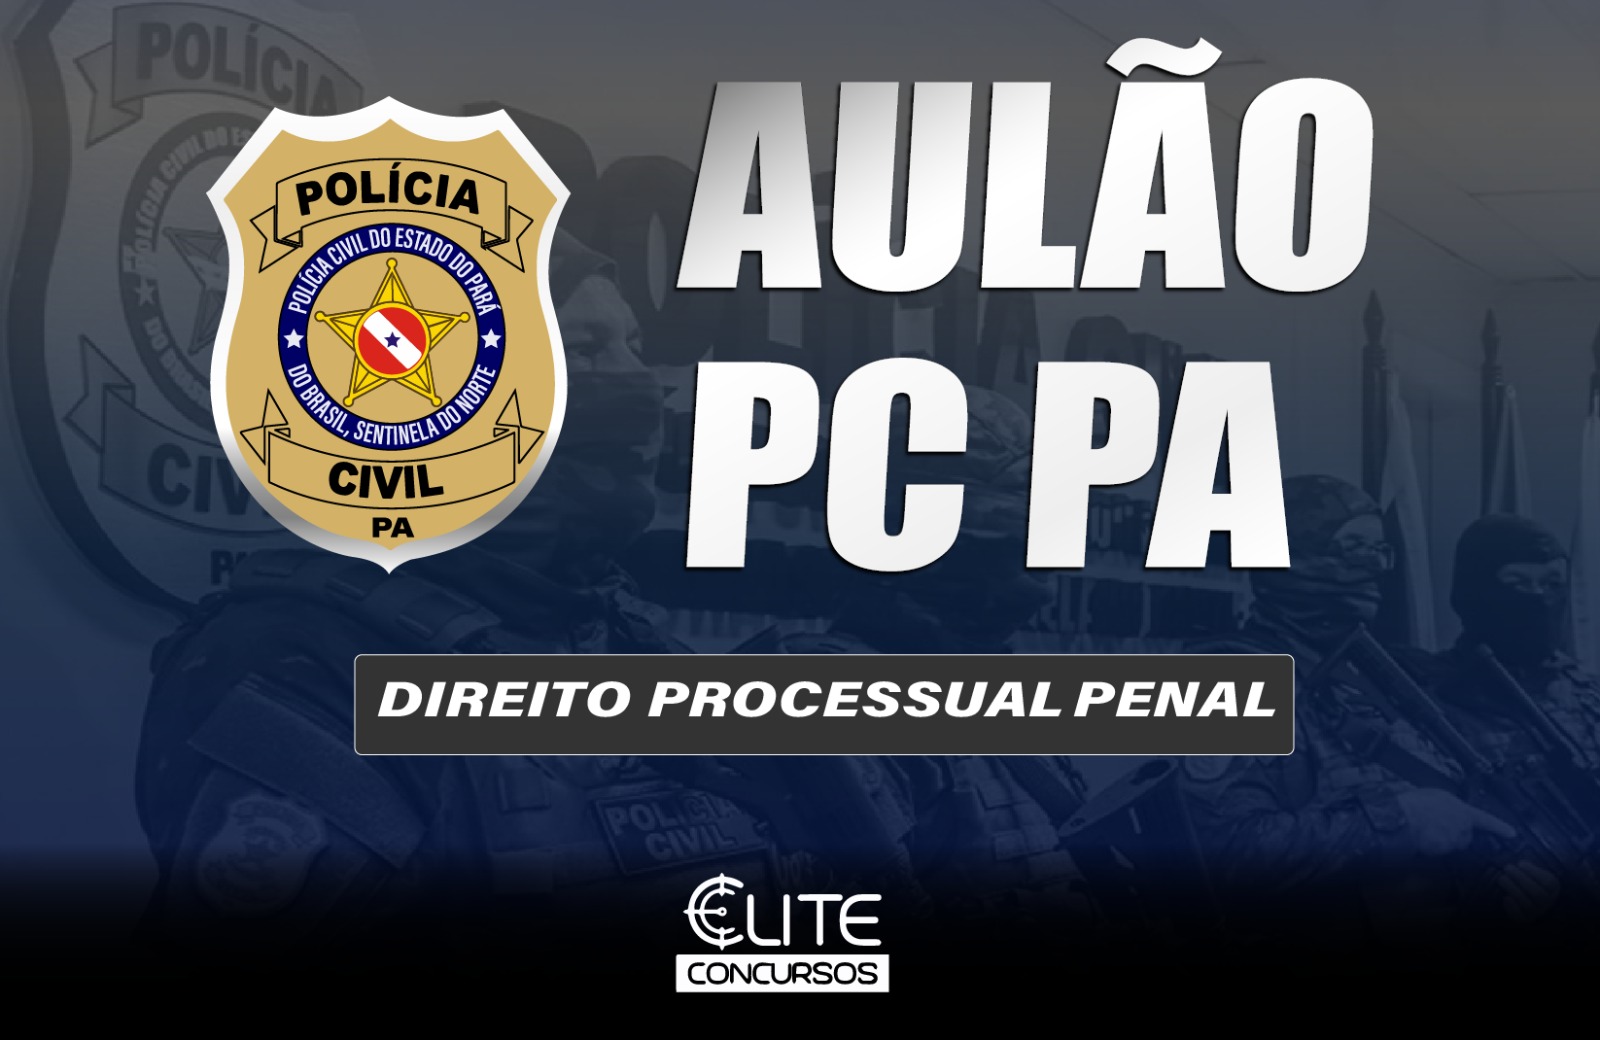 AUL�O POL�CIA CIVIL - PROCESSUAL PENAL